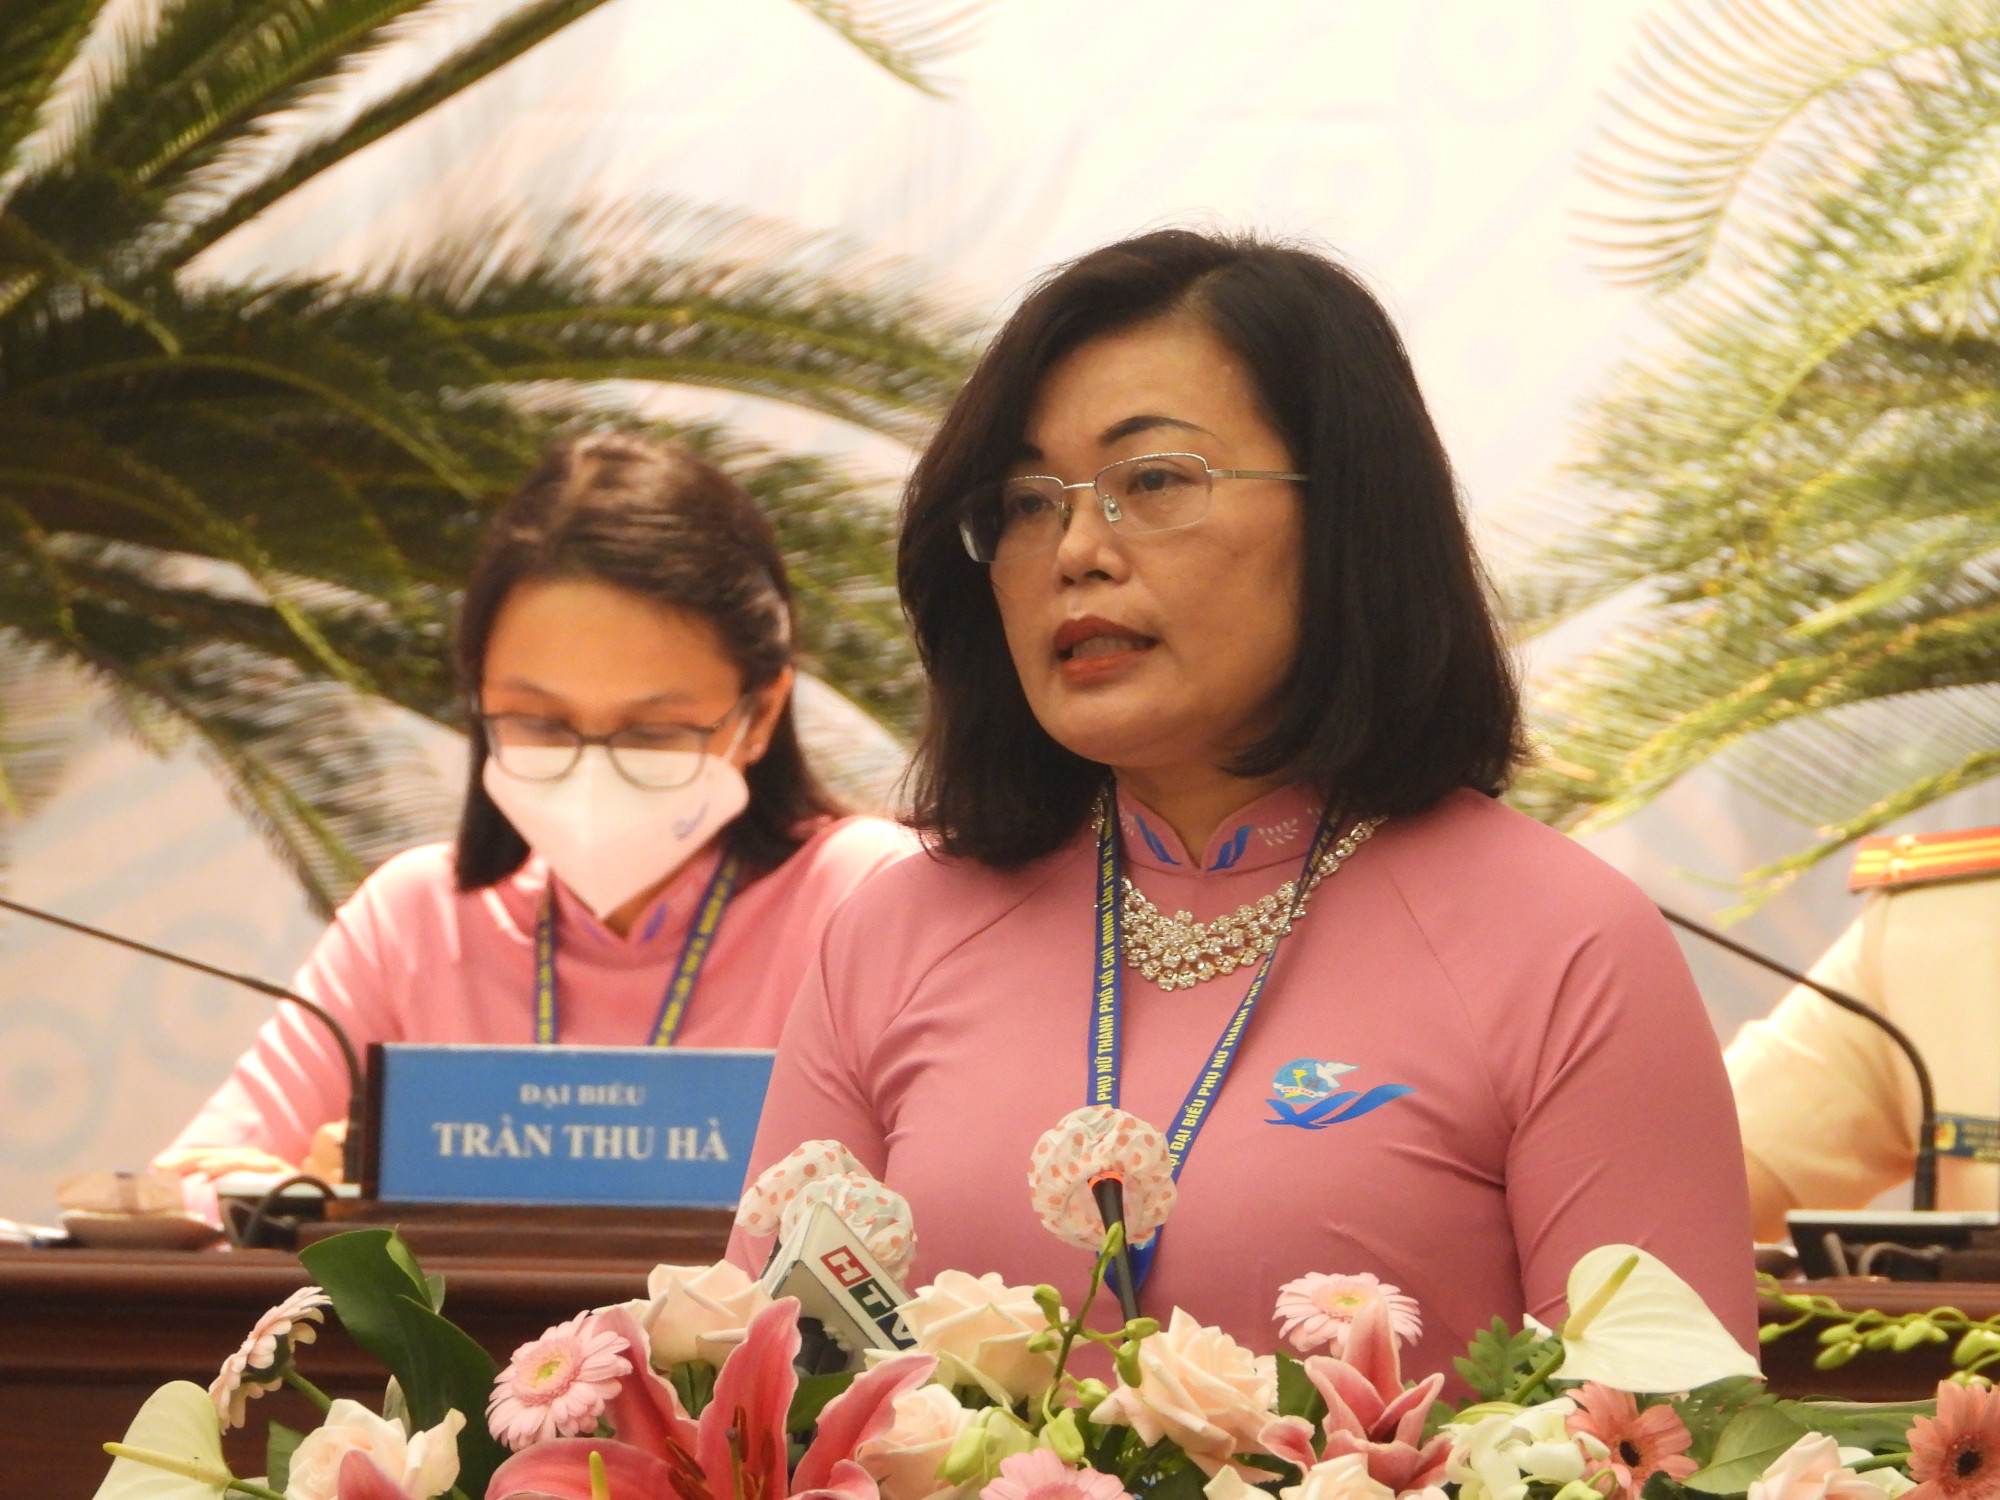 PGS - BS- TS Hoàng Thị Diễm Tuyết - Giám đốc bệnh viện Hùng Vương phát biểu tham luận tại đại hội